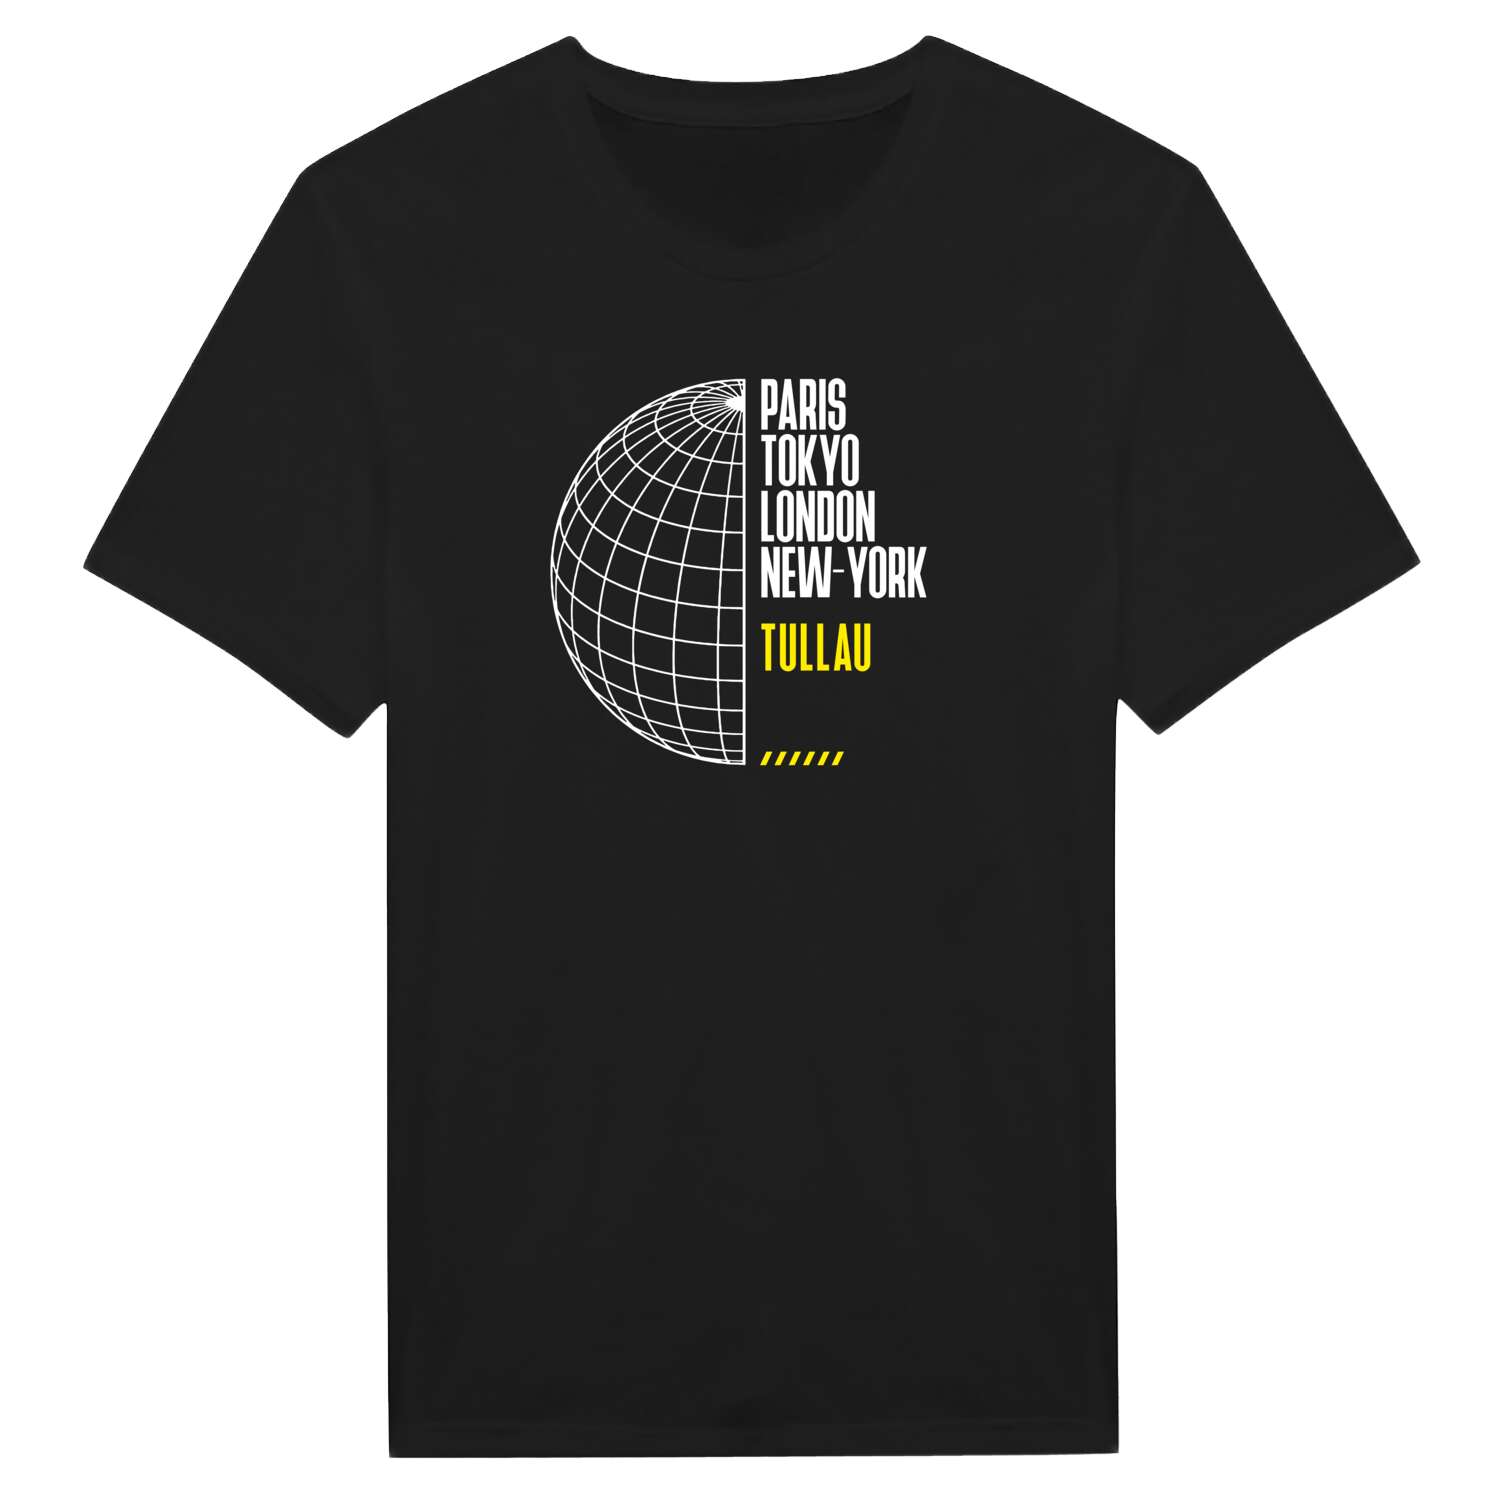 Tullau T-Shirt »Paris Tokyo London«